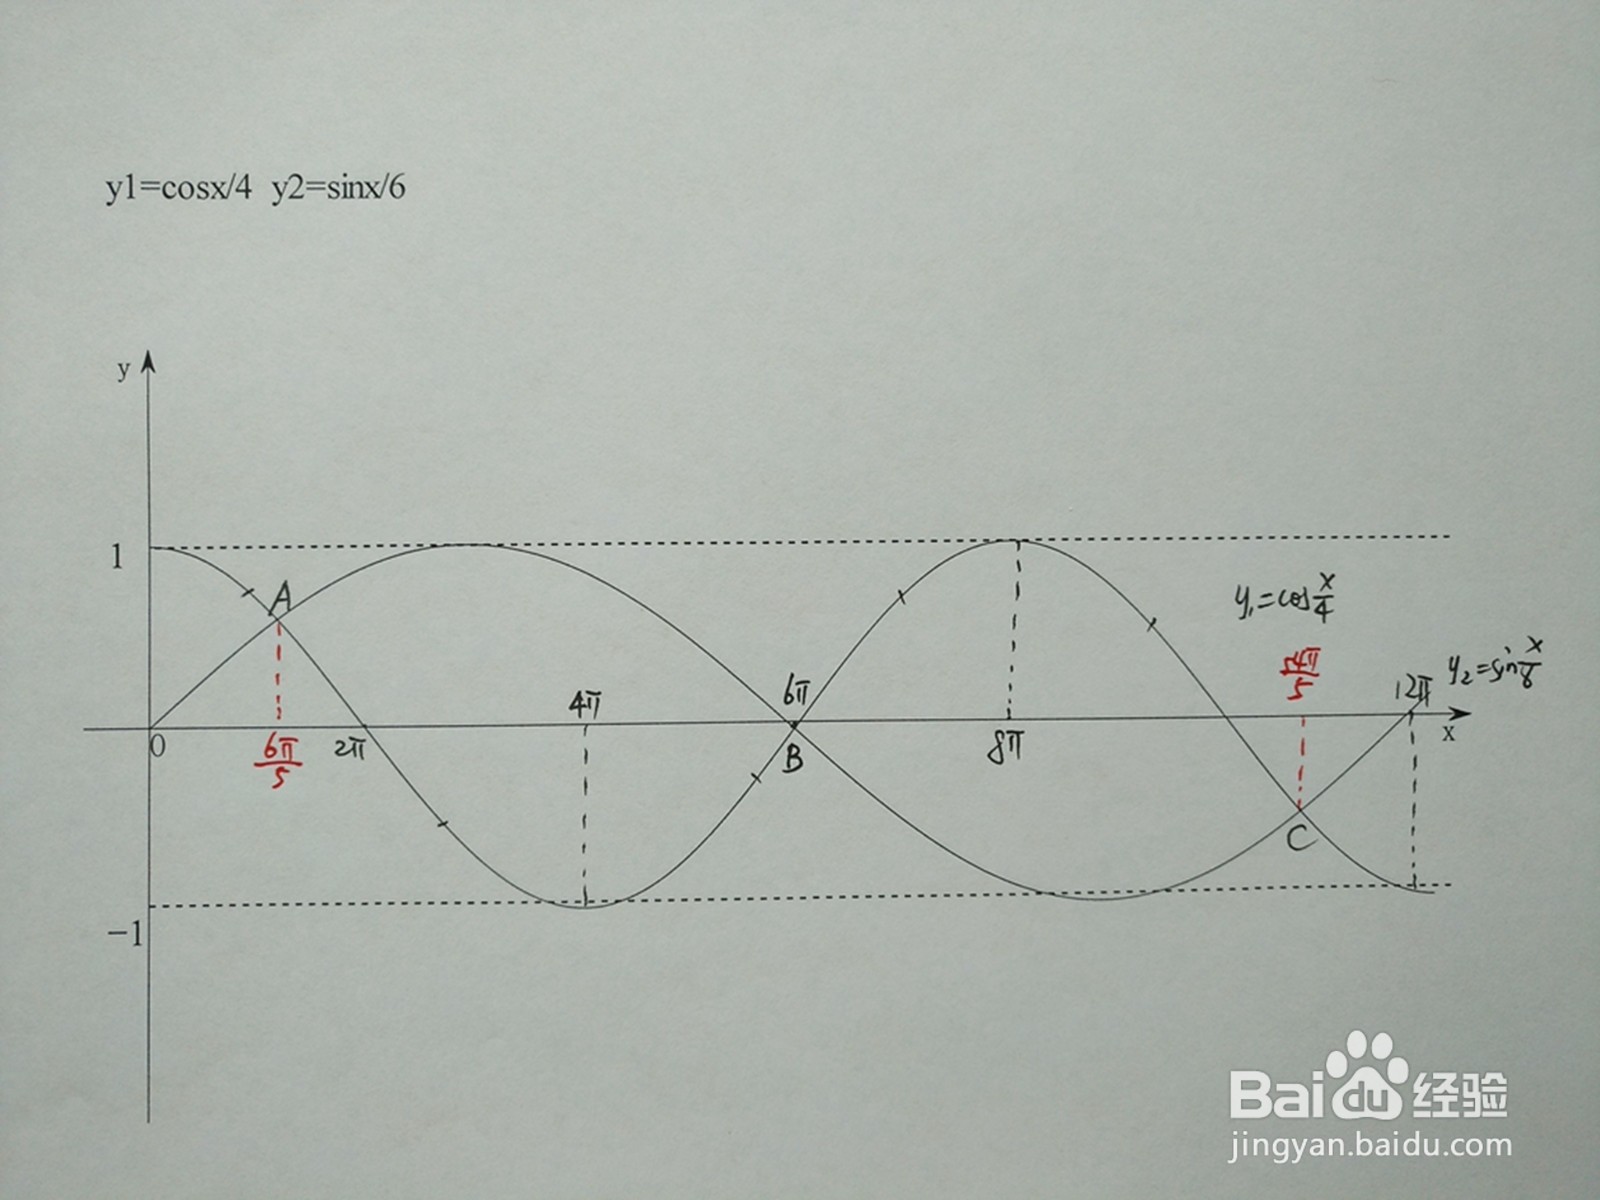 怎么计算y1=cosx/4与y2=sinx/6的交点